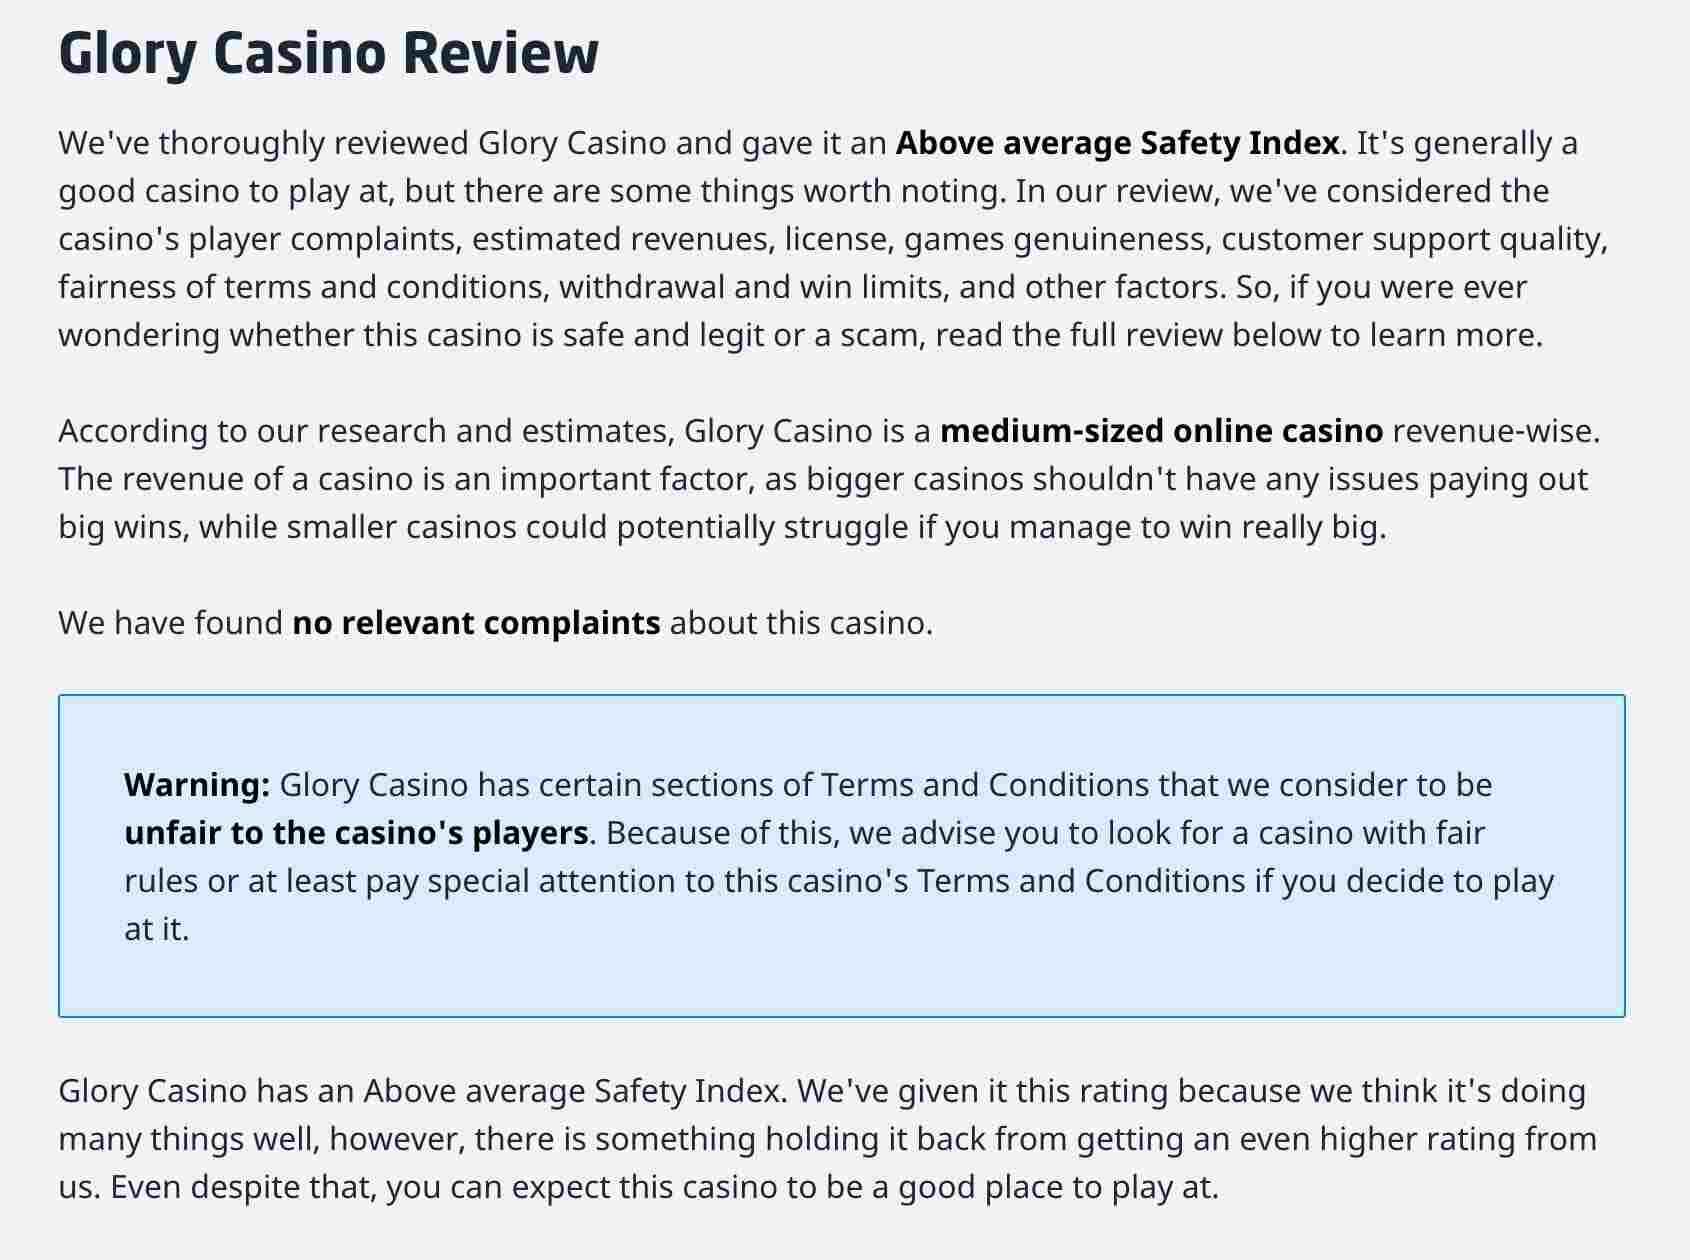 glory casino review caino guru